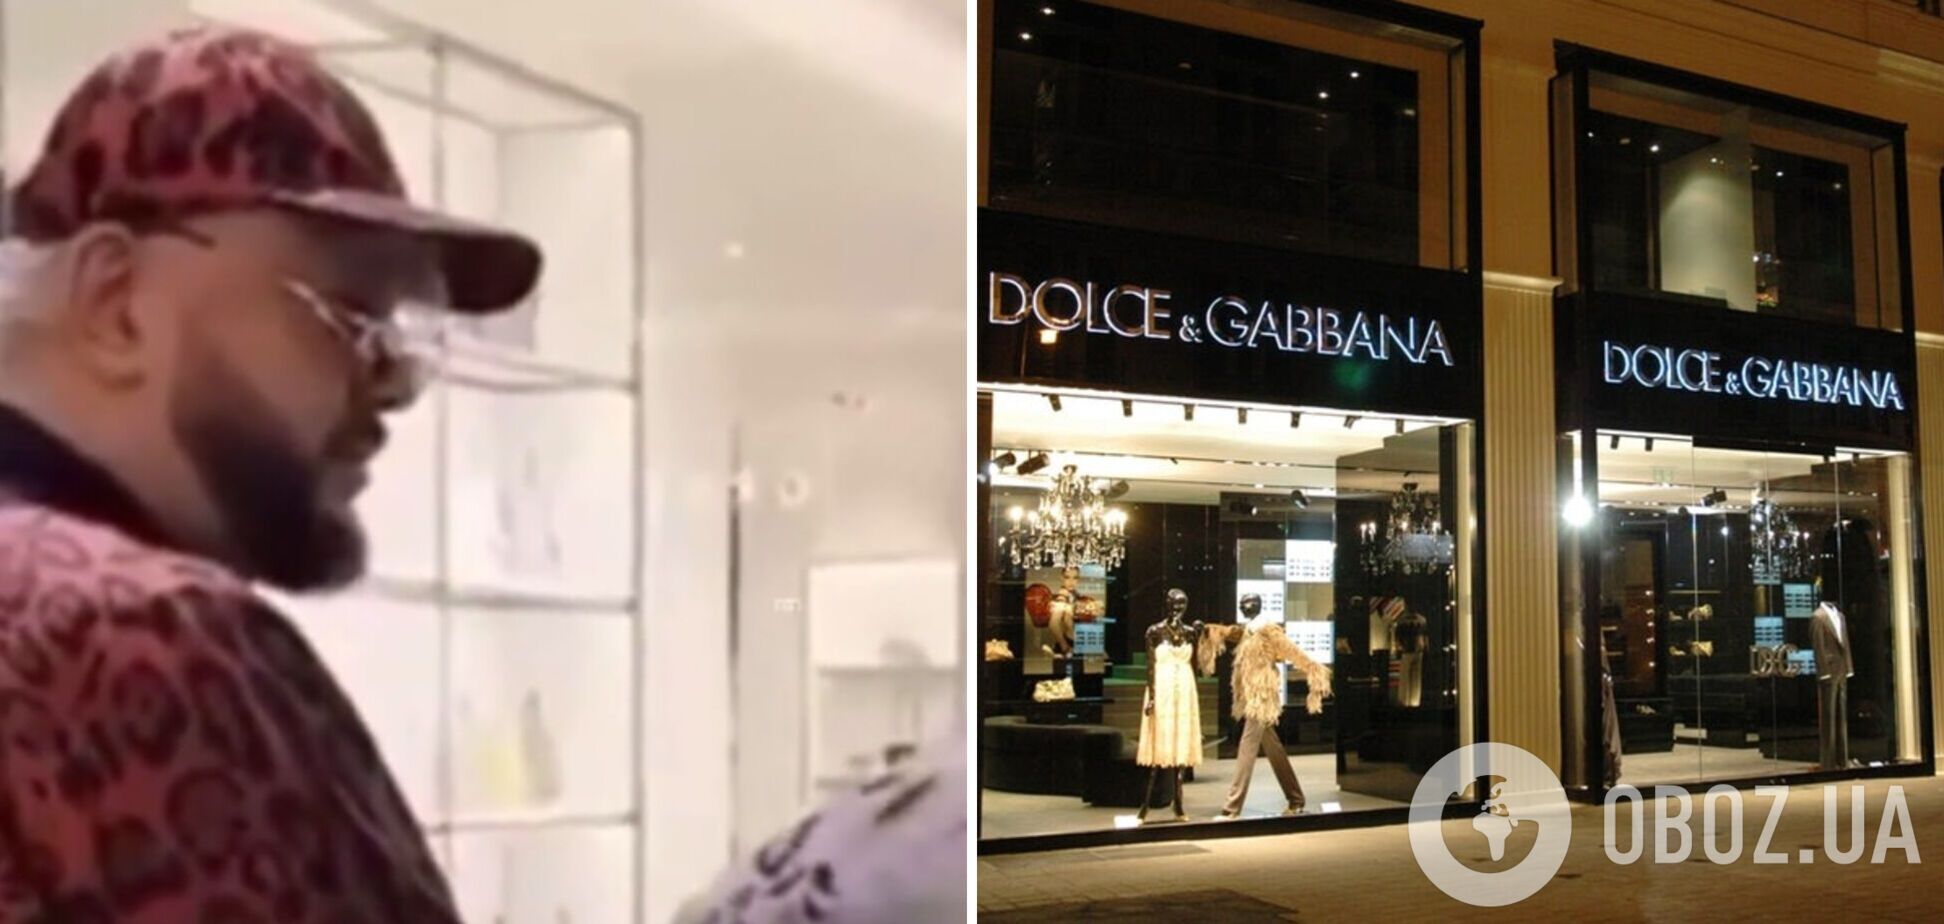 'Ви знаєте, хто я такий?': Кіркоров пригрозив скандалом охоронцю Dolce & Gabbana, який не хотів його пускати